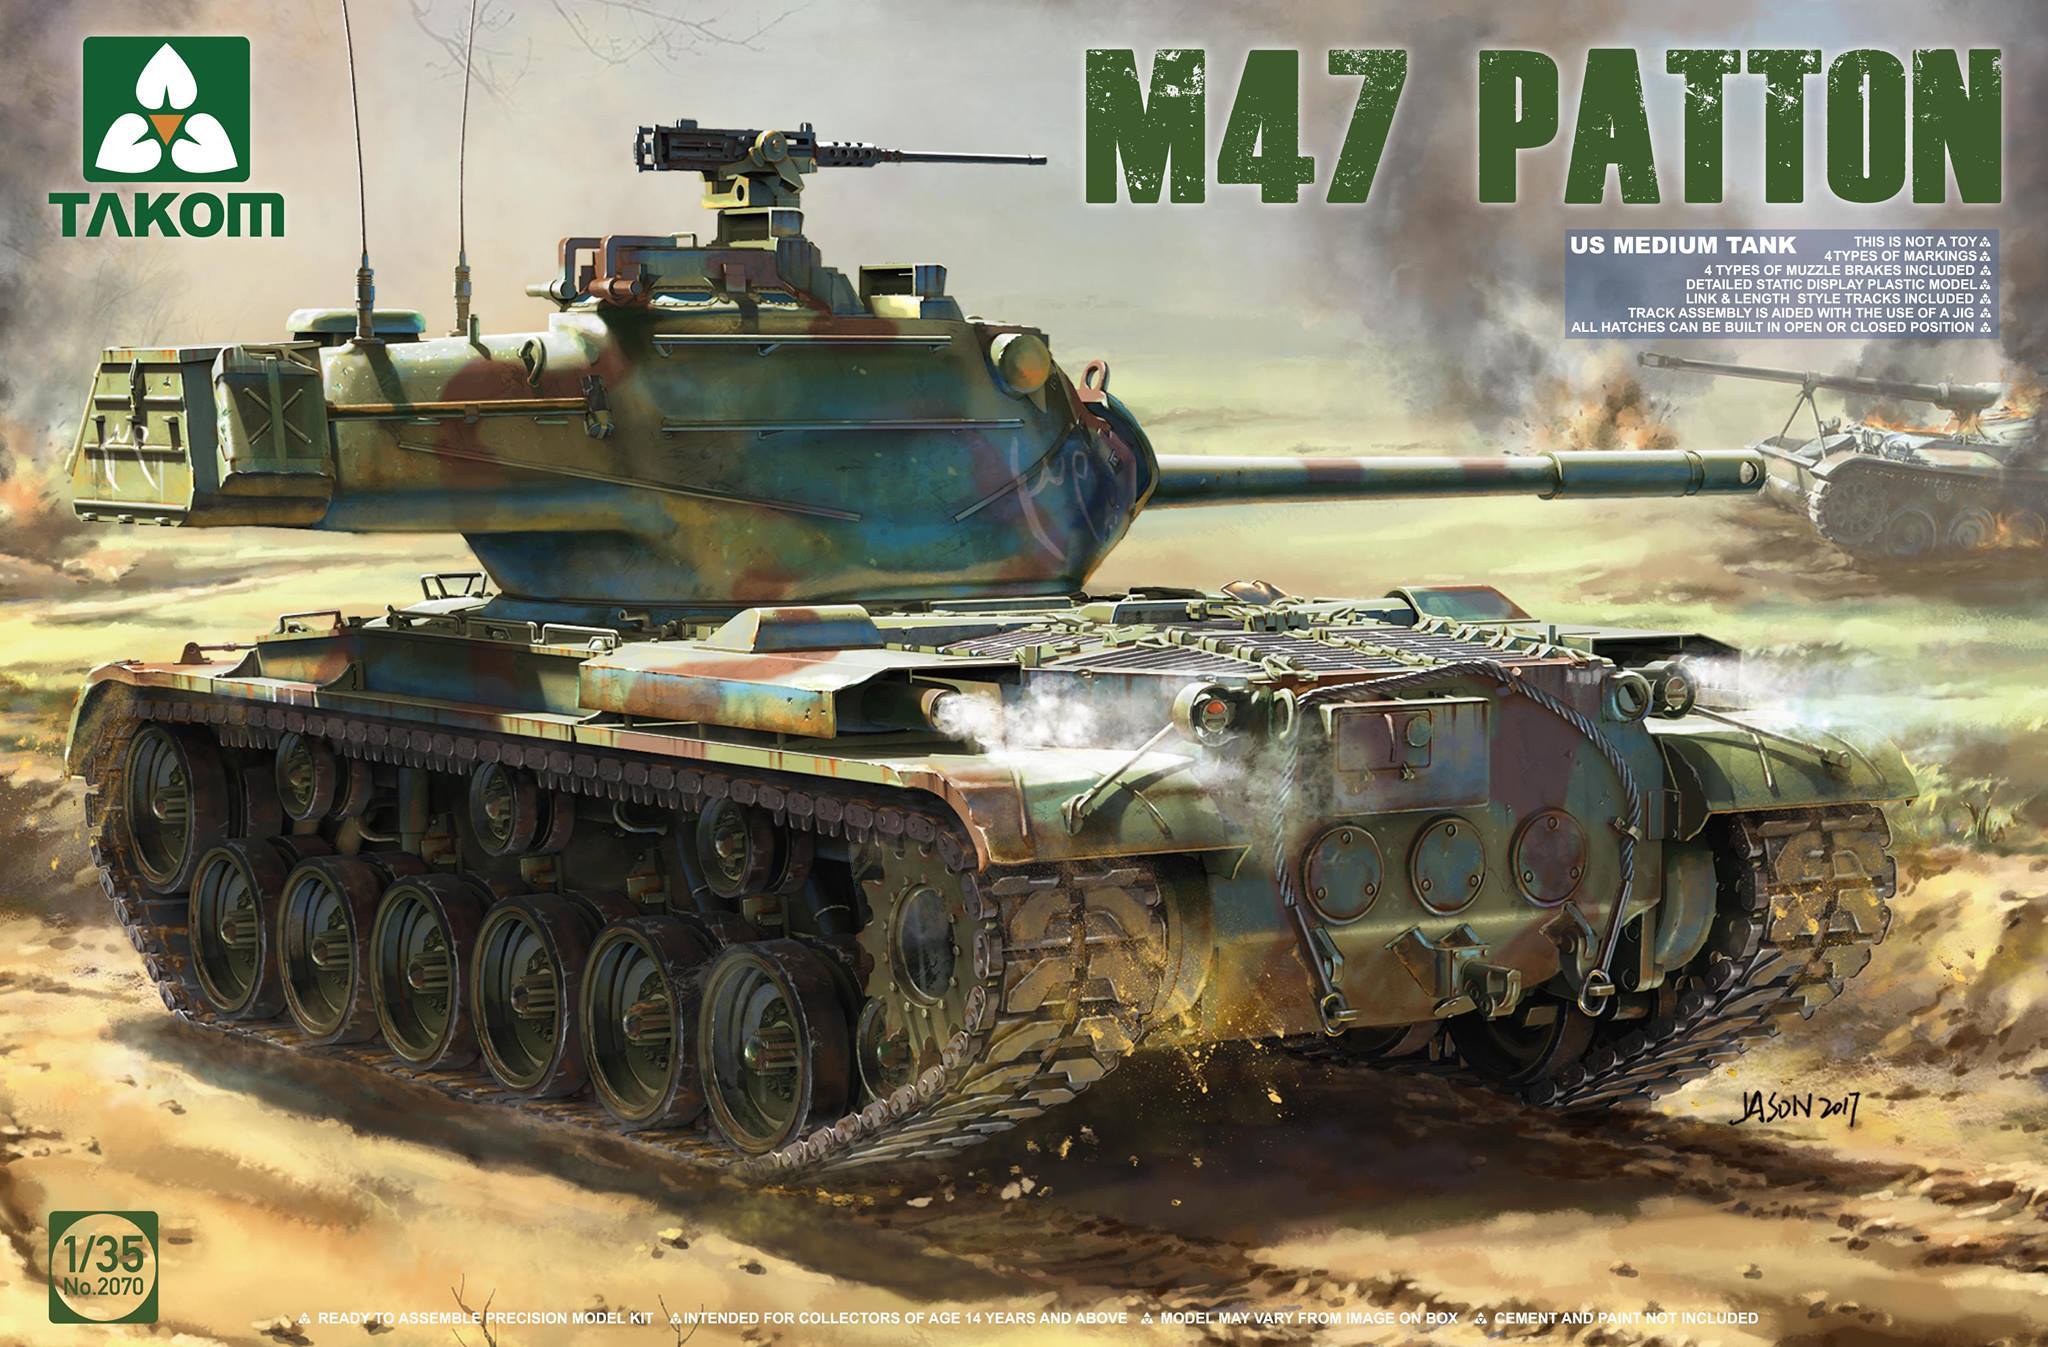 US Medium Tank M47 Patton